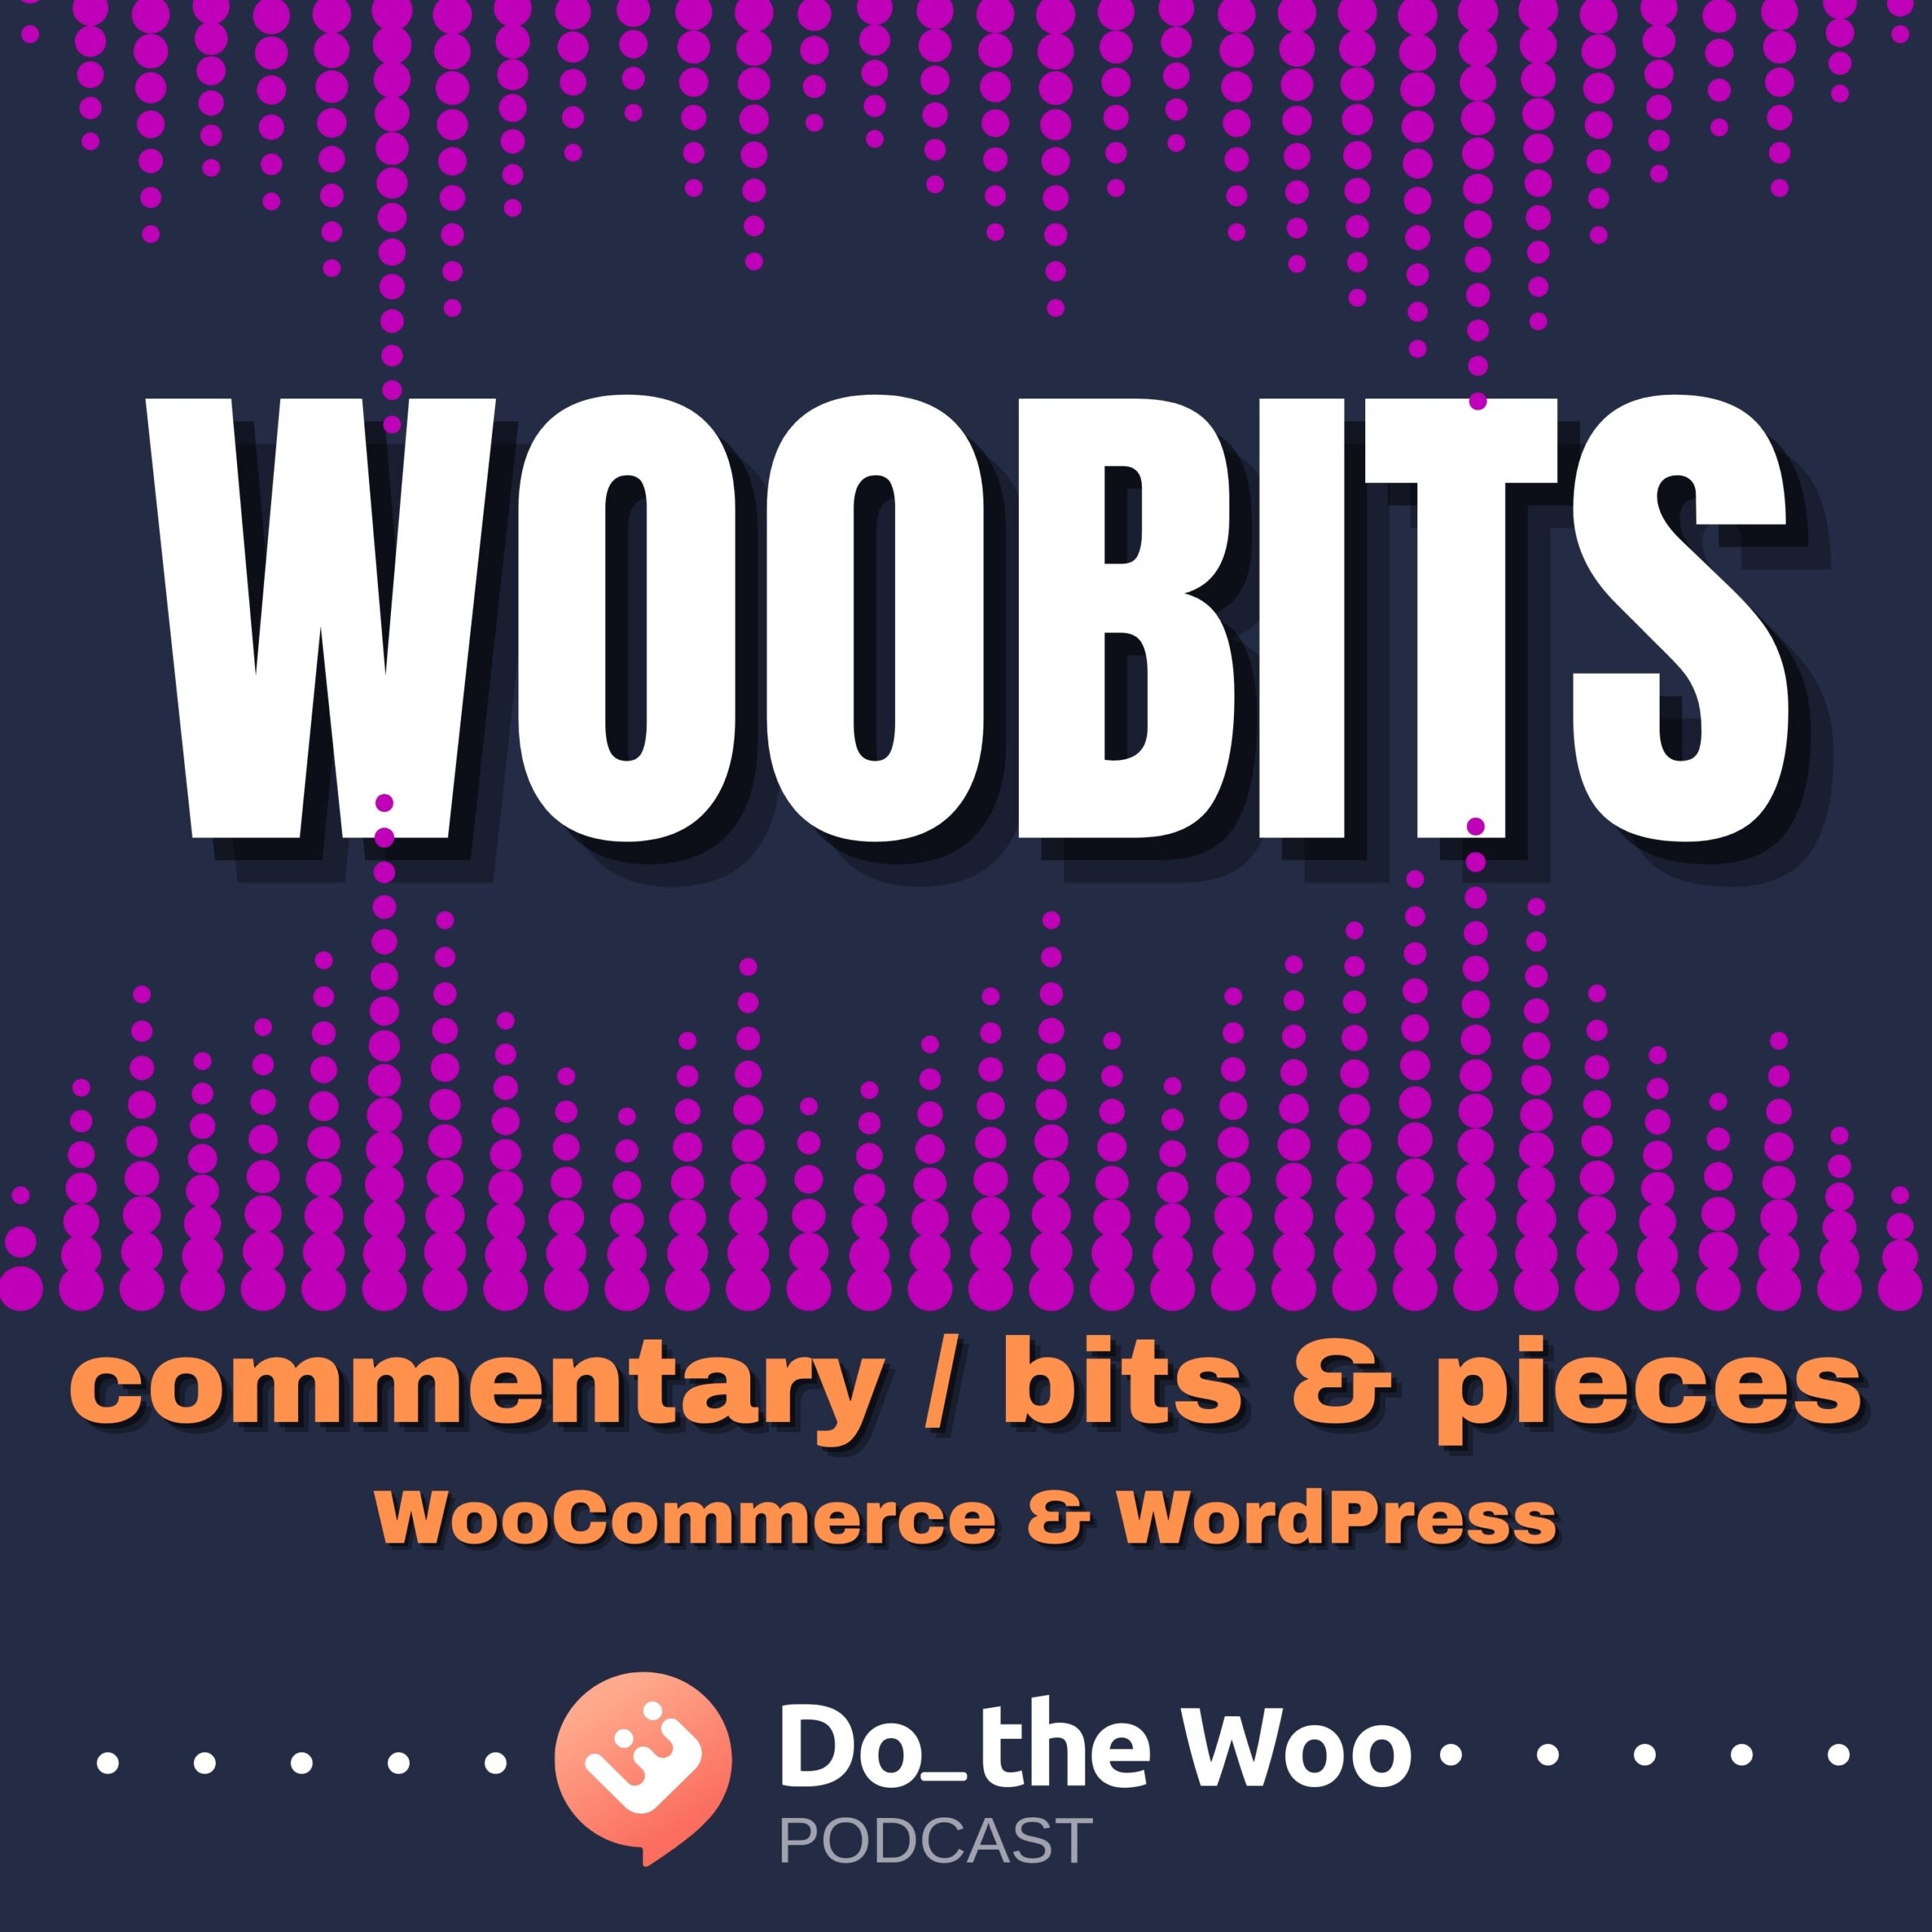 WooBits